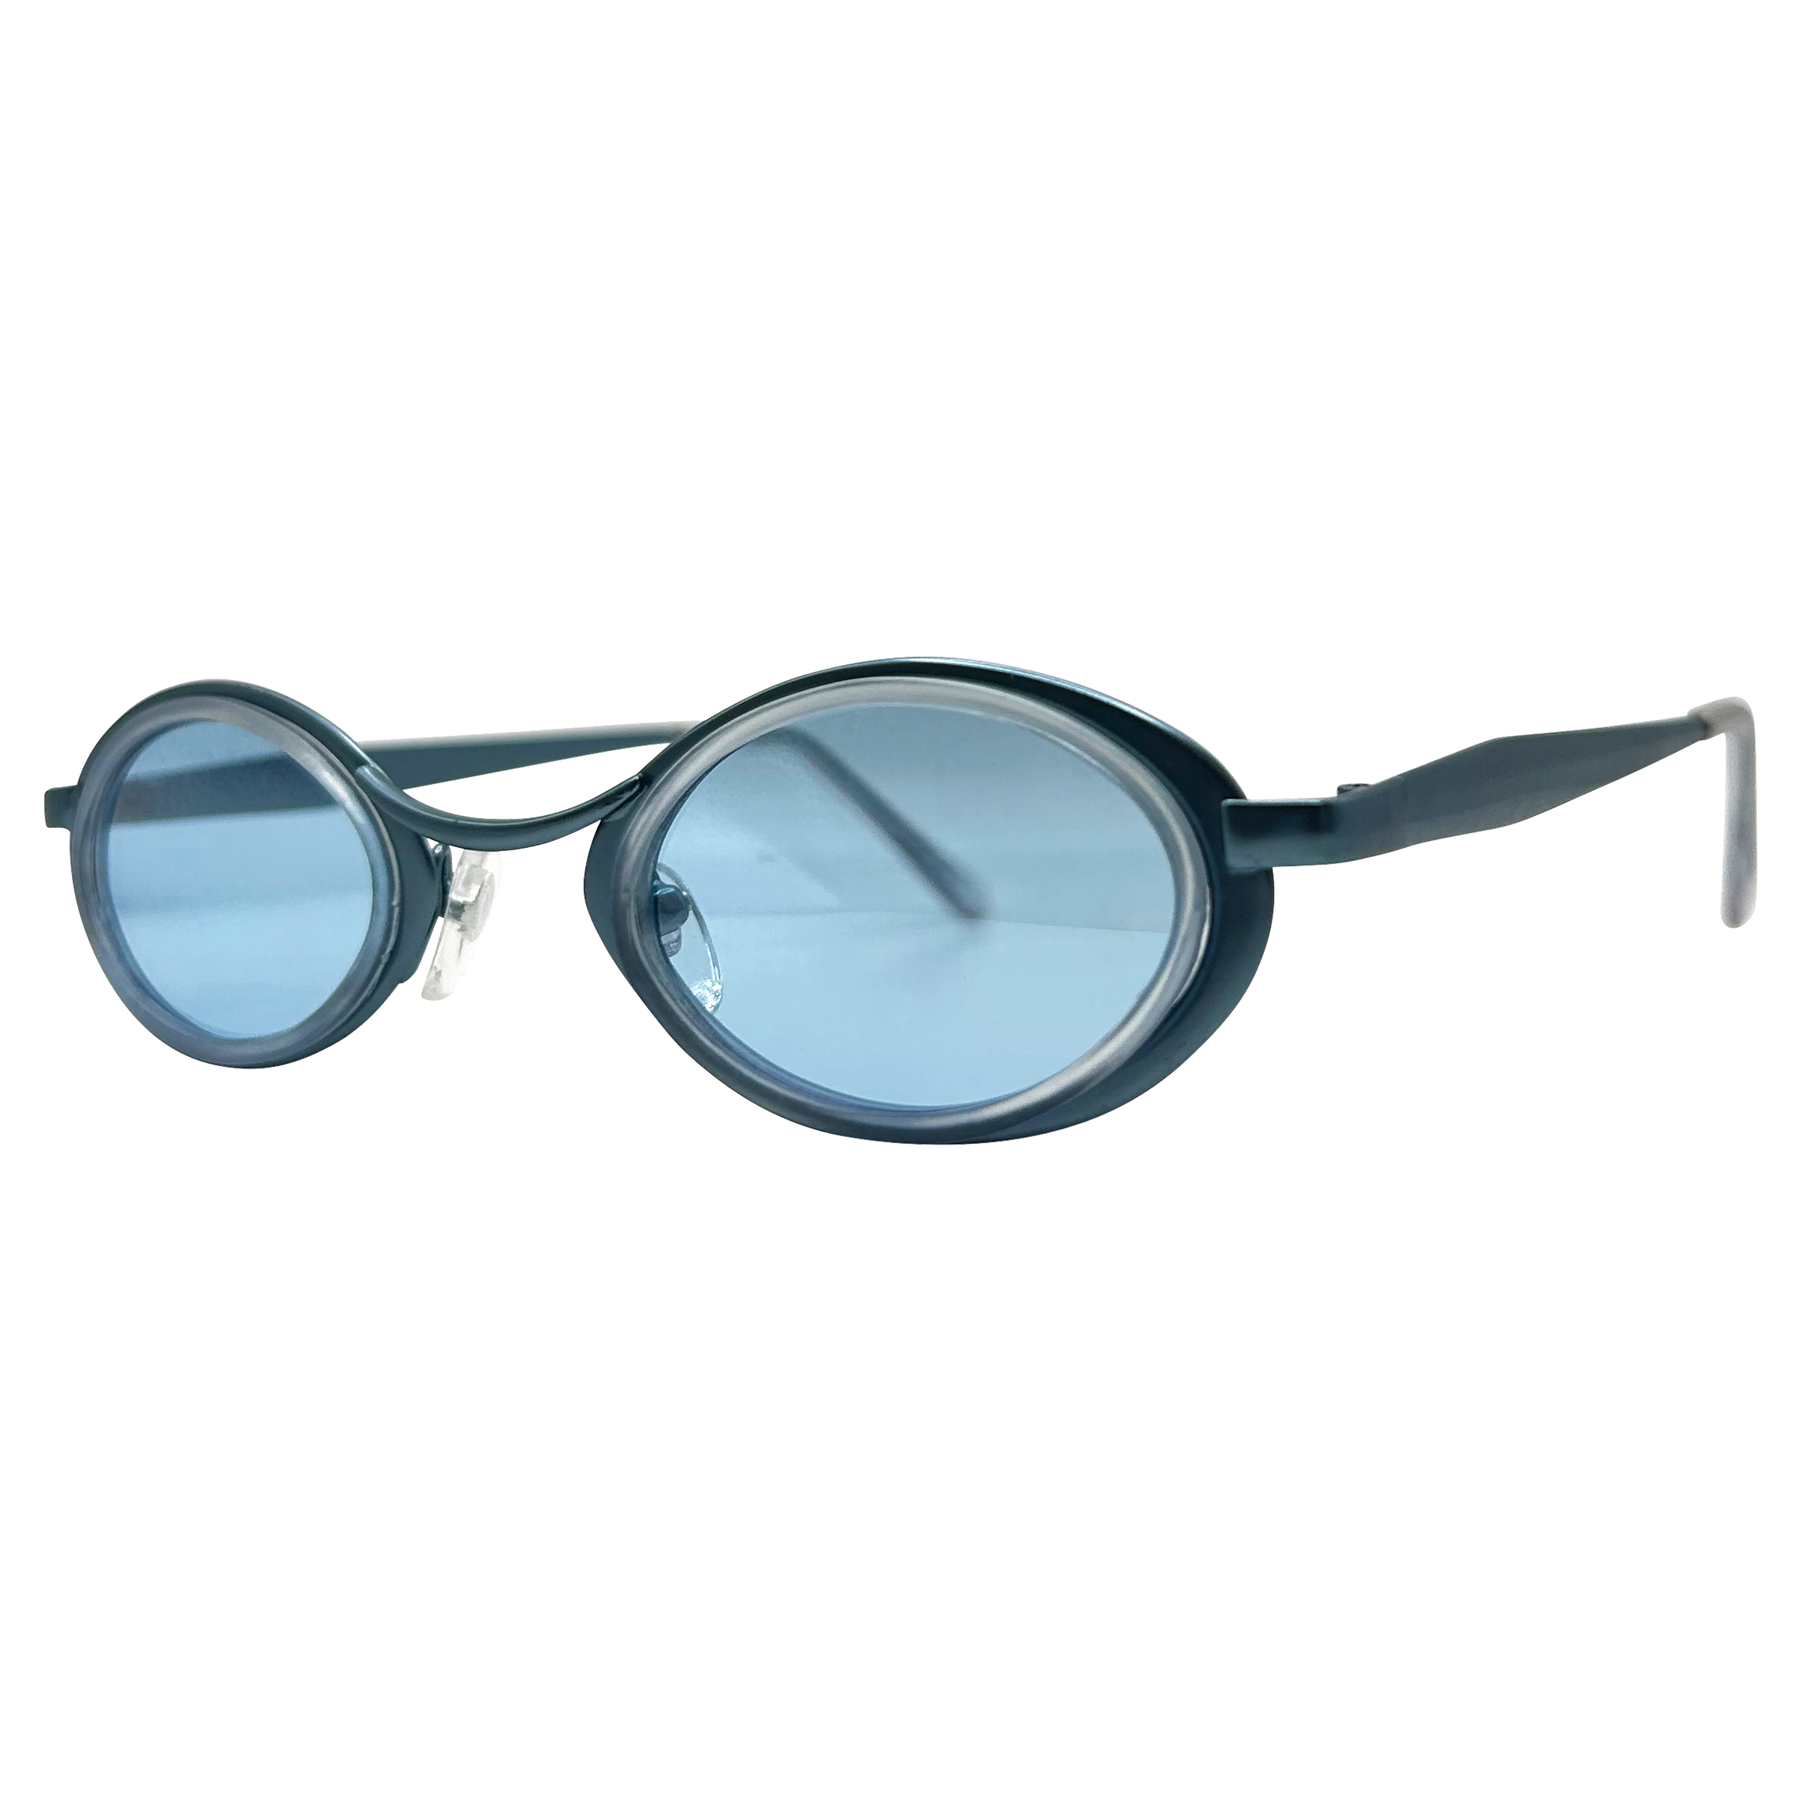 UNPREDICTABLE Oval 90s Sunglasses